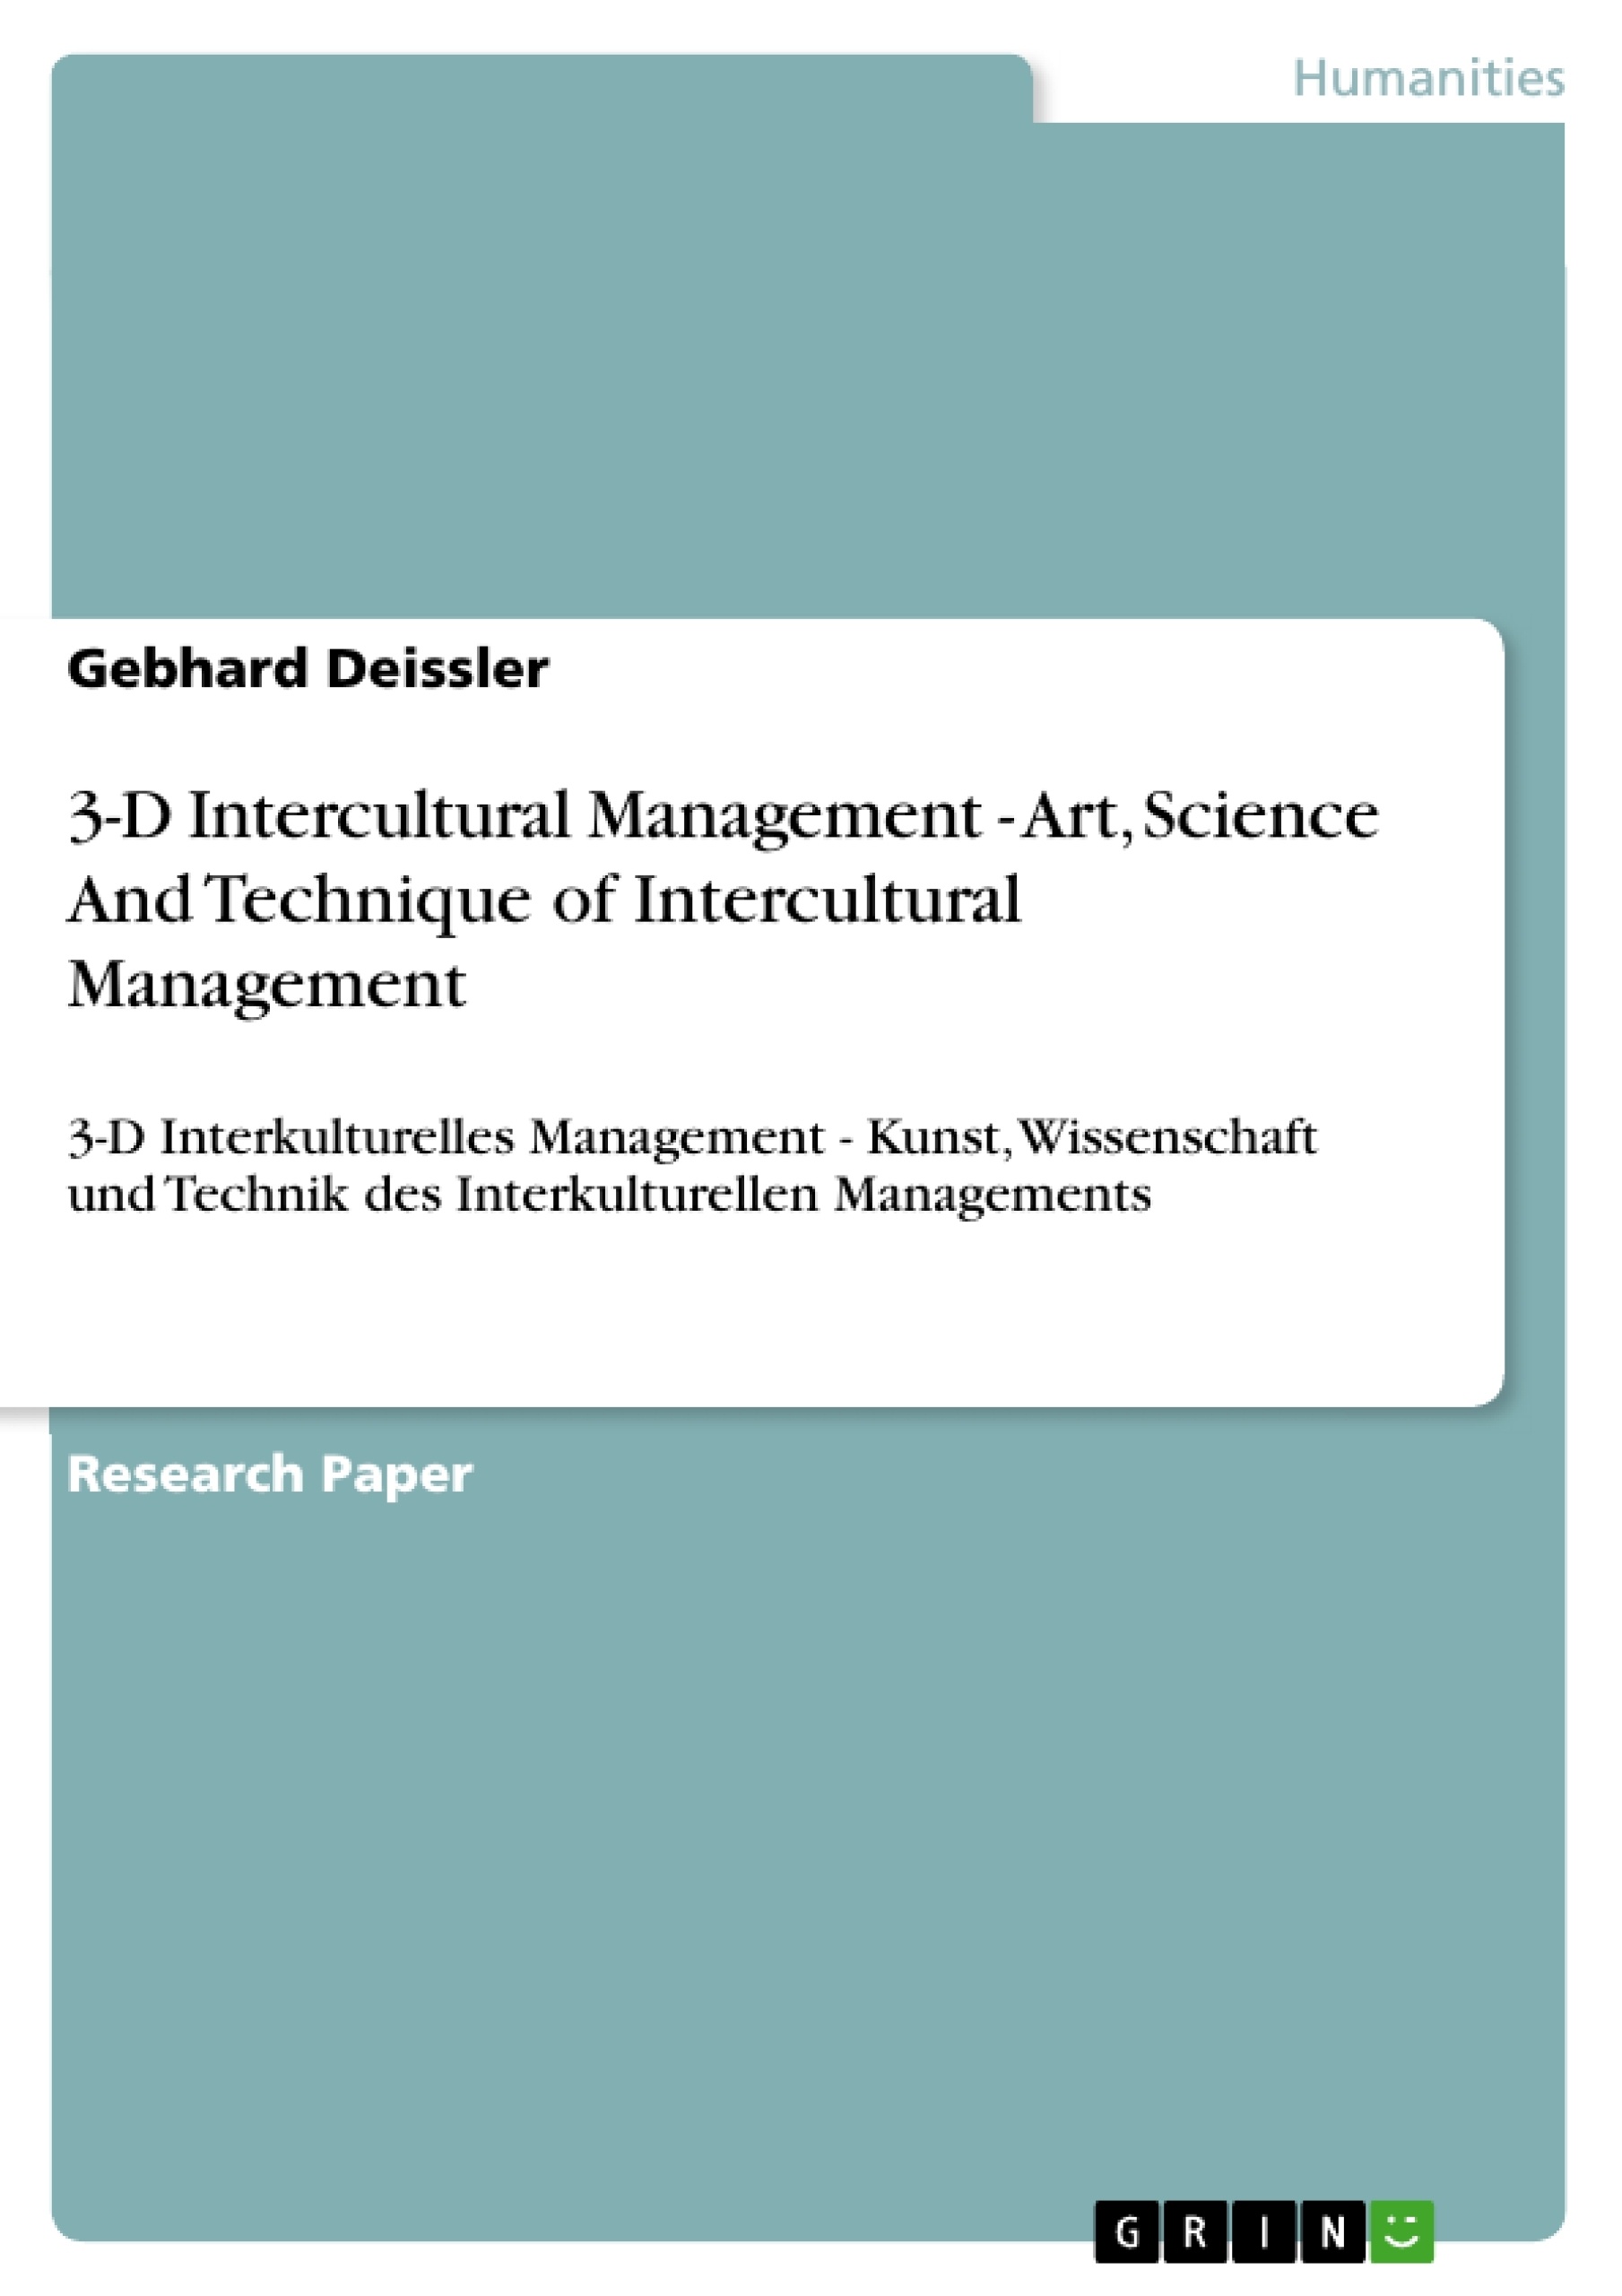 Title: 3-D Intercultural Management - Art, Science And Technique of Intercultural Management